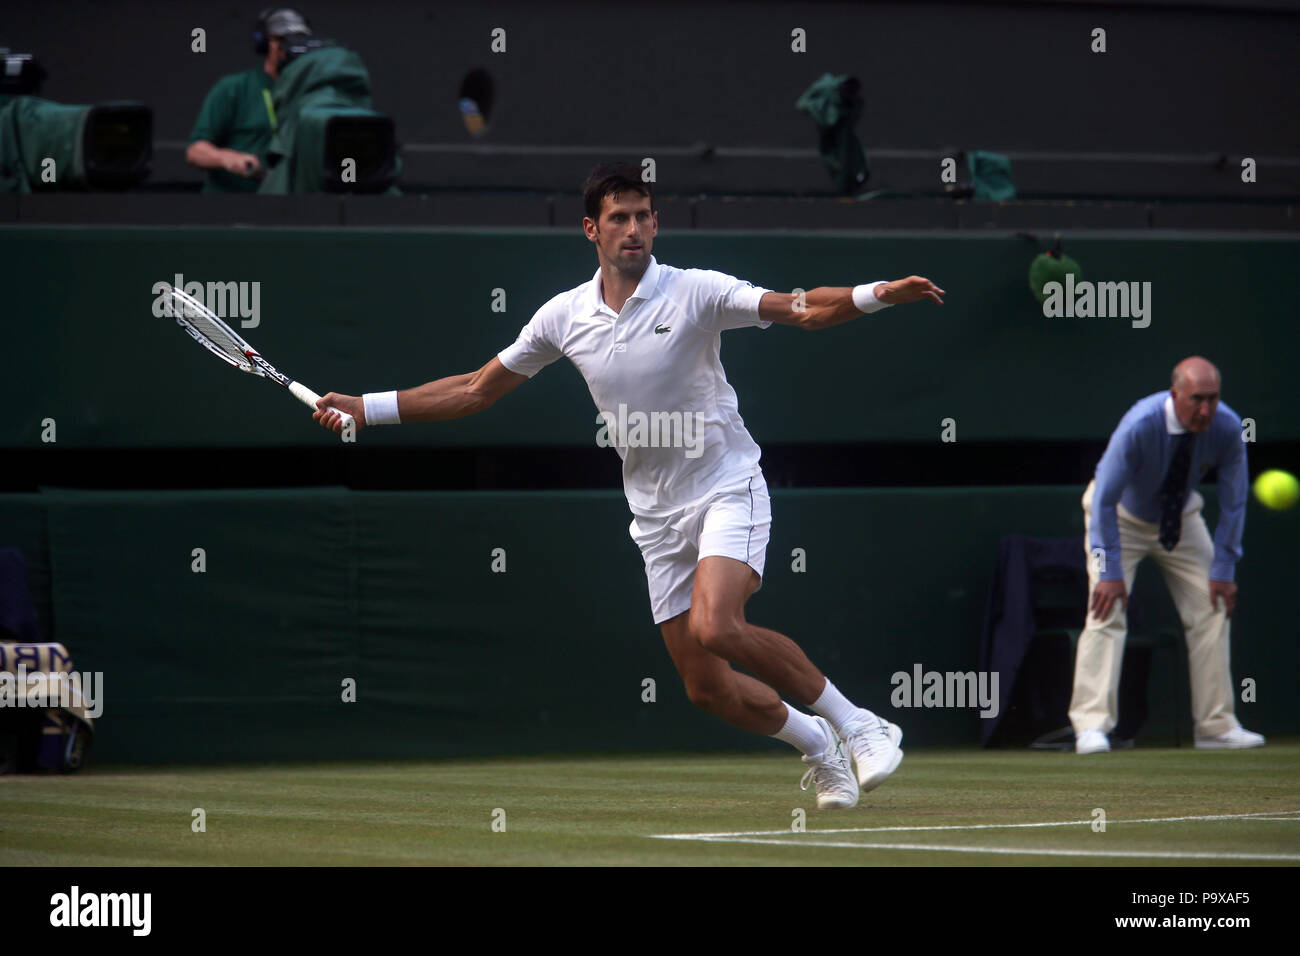 Londra, Inghilterra - Luglio 7, 2018. Wimbledon Tennis: Novak Djokovic durante il suo terzo round match contro la Gran Bretagna Kyle Edmund sul Centre Court di Wimbledon oggi. Foto Stock